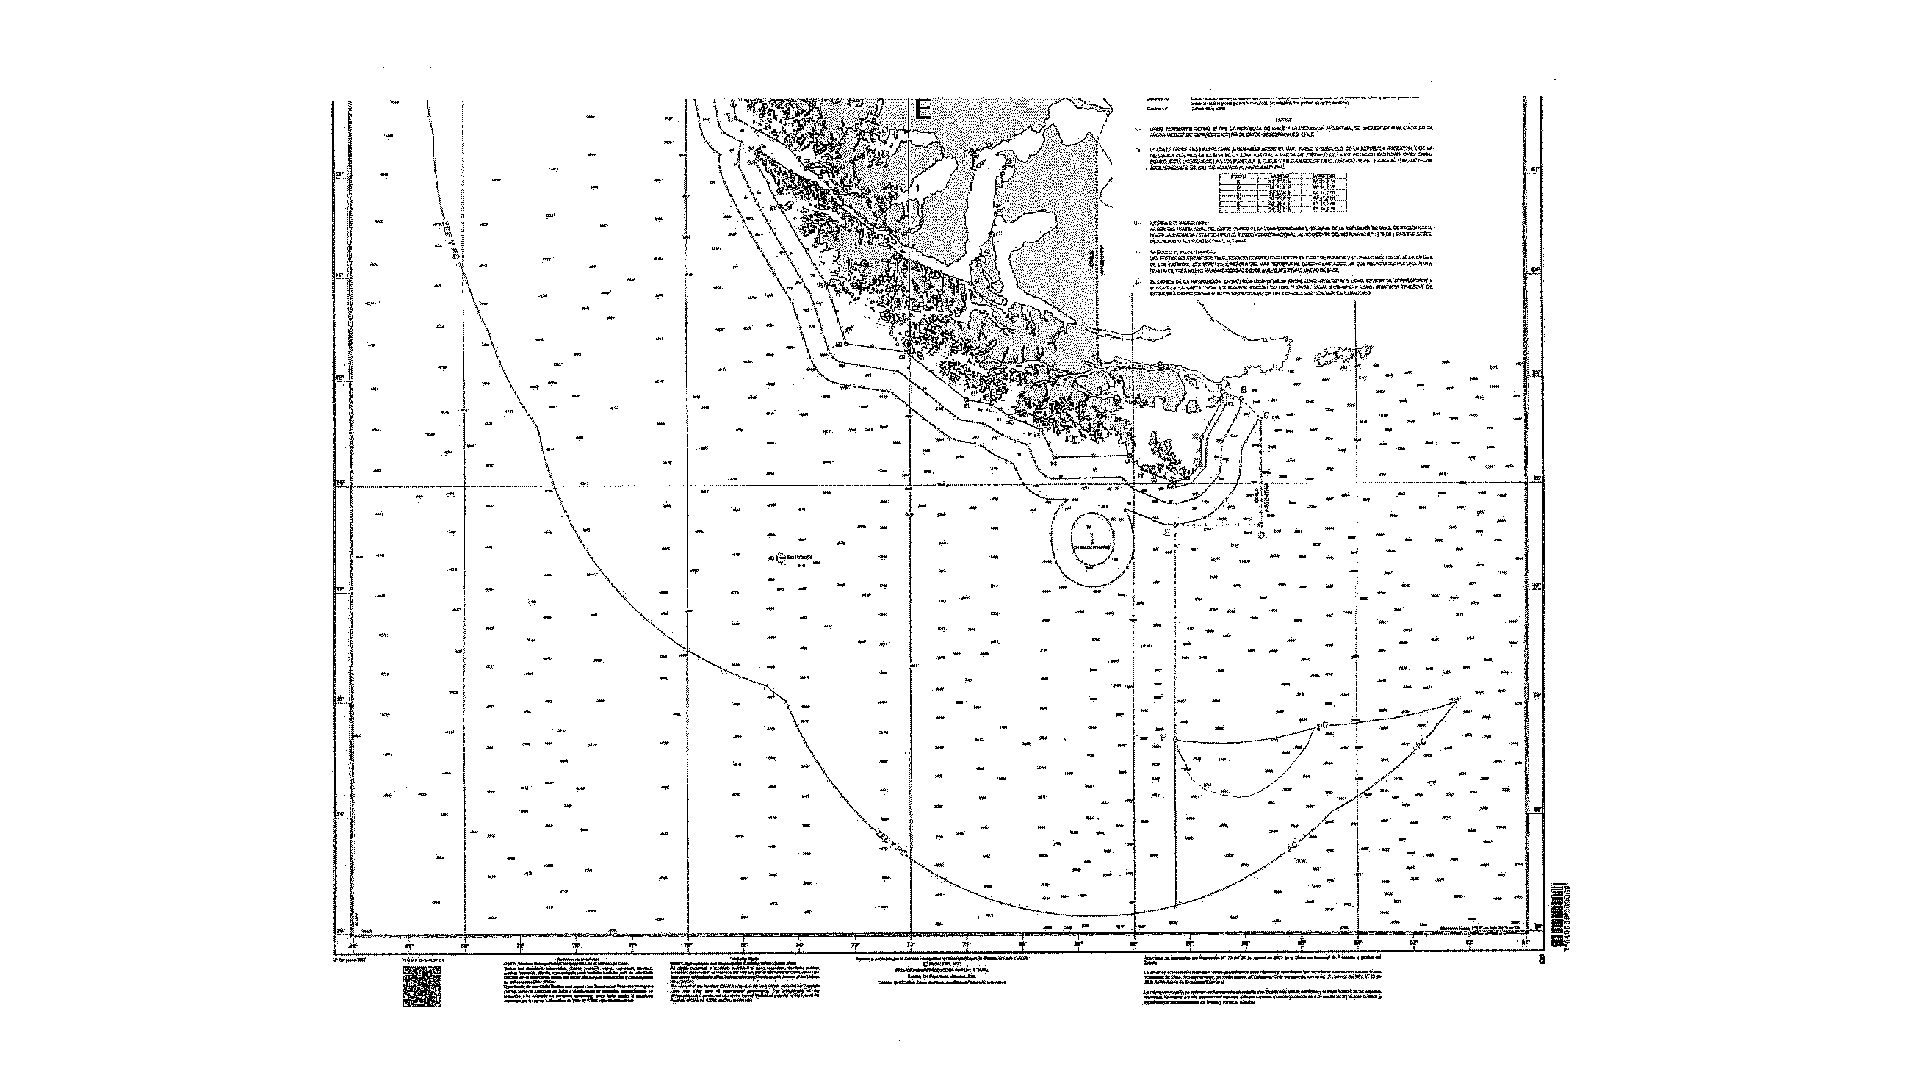 El mapa con plataforma continental austral de Chile, según el decreto presidencial de Piñera